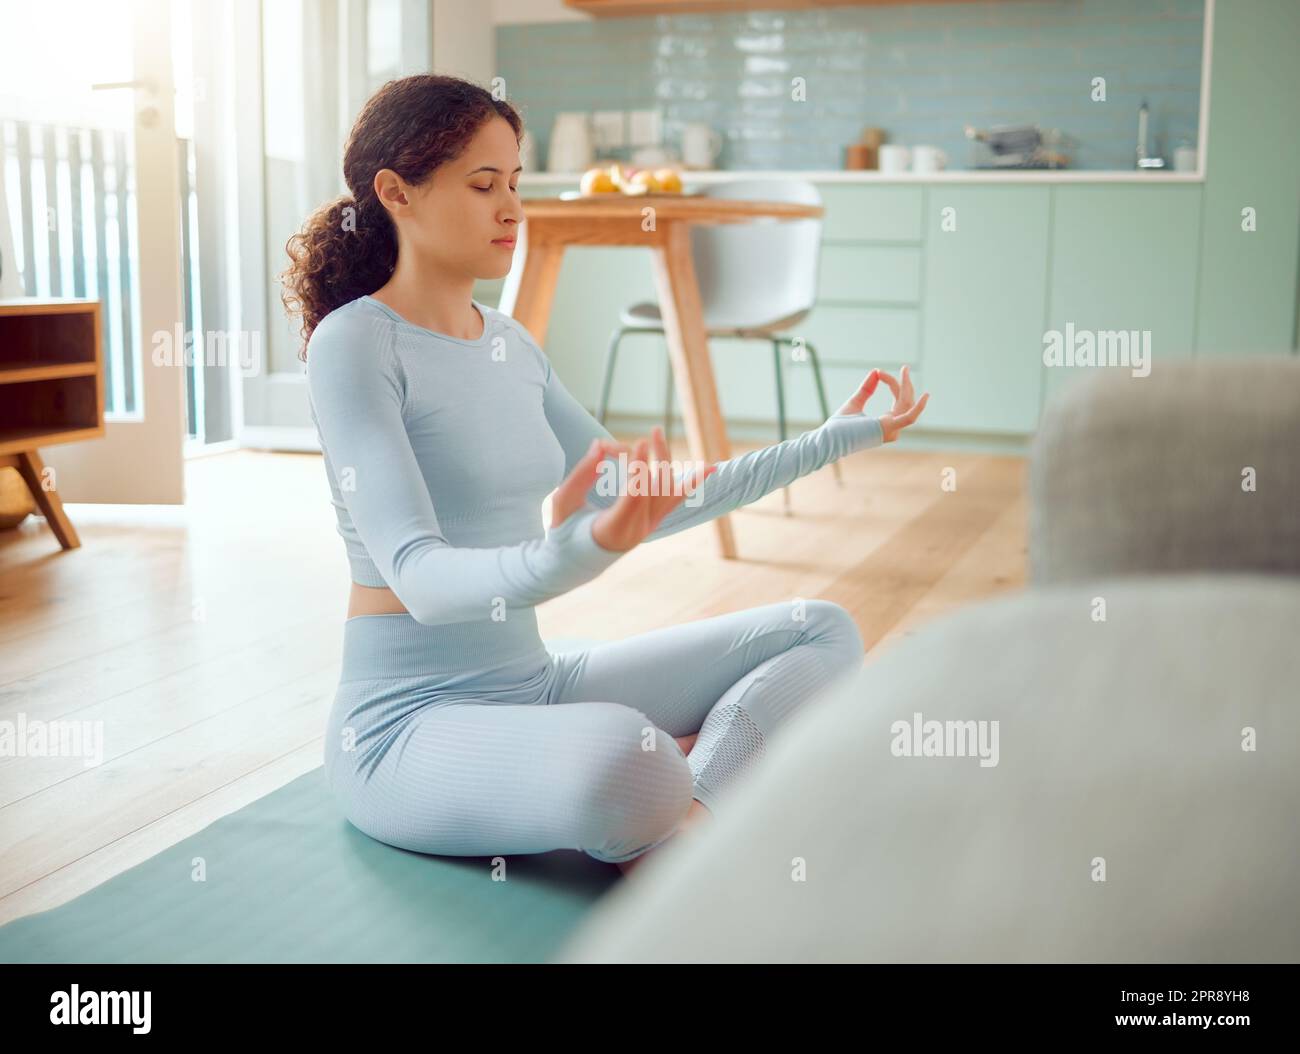 Belle jeune femme de course mixte méditant dans la position d'asana tout en pratiquant le yoga à la maison. Femme hispanique exerçant son corps et son esprit, trouvant la paix intérieure, l'équilibre et la clarté Banque D'Images